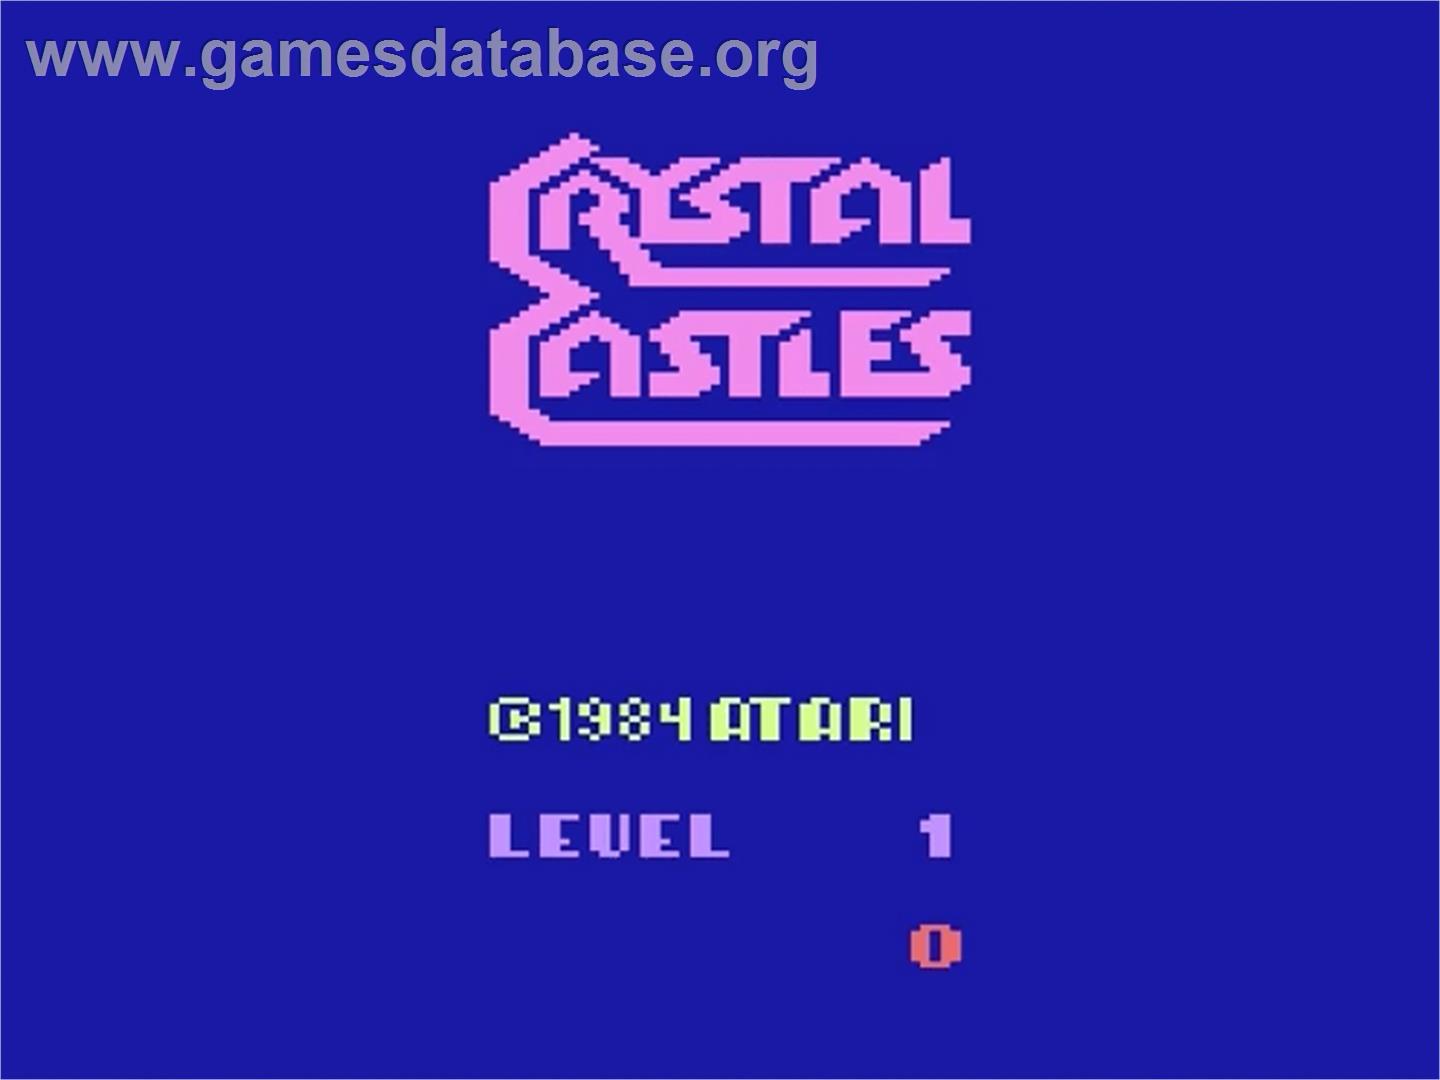 Crystal Castles - Atari 2600 - Artwork - Title Screen